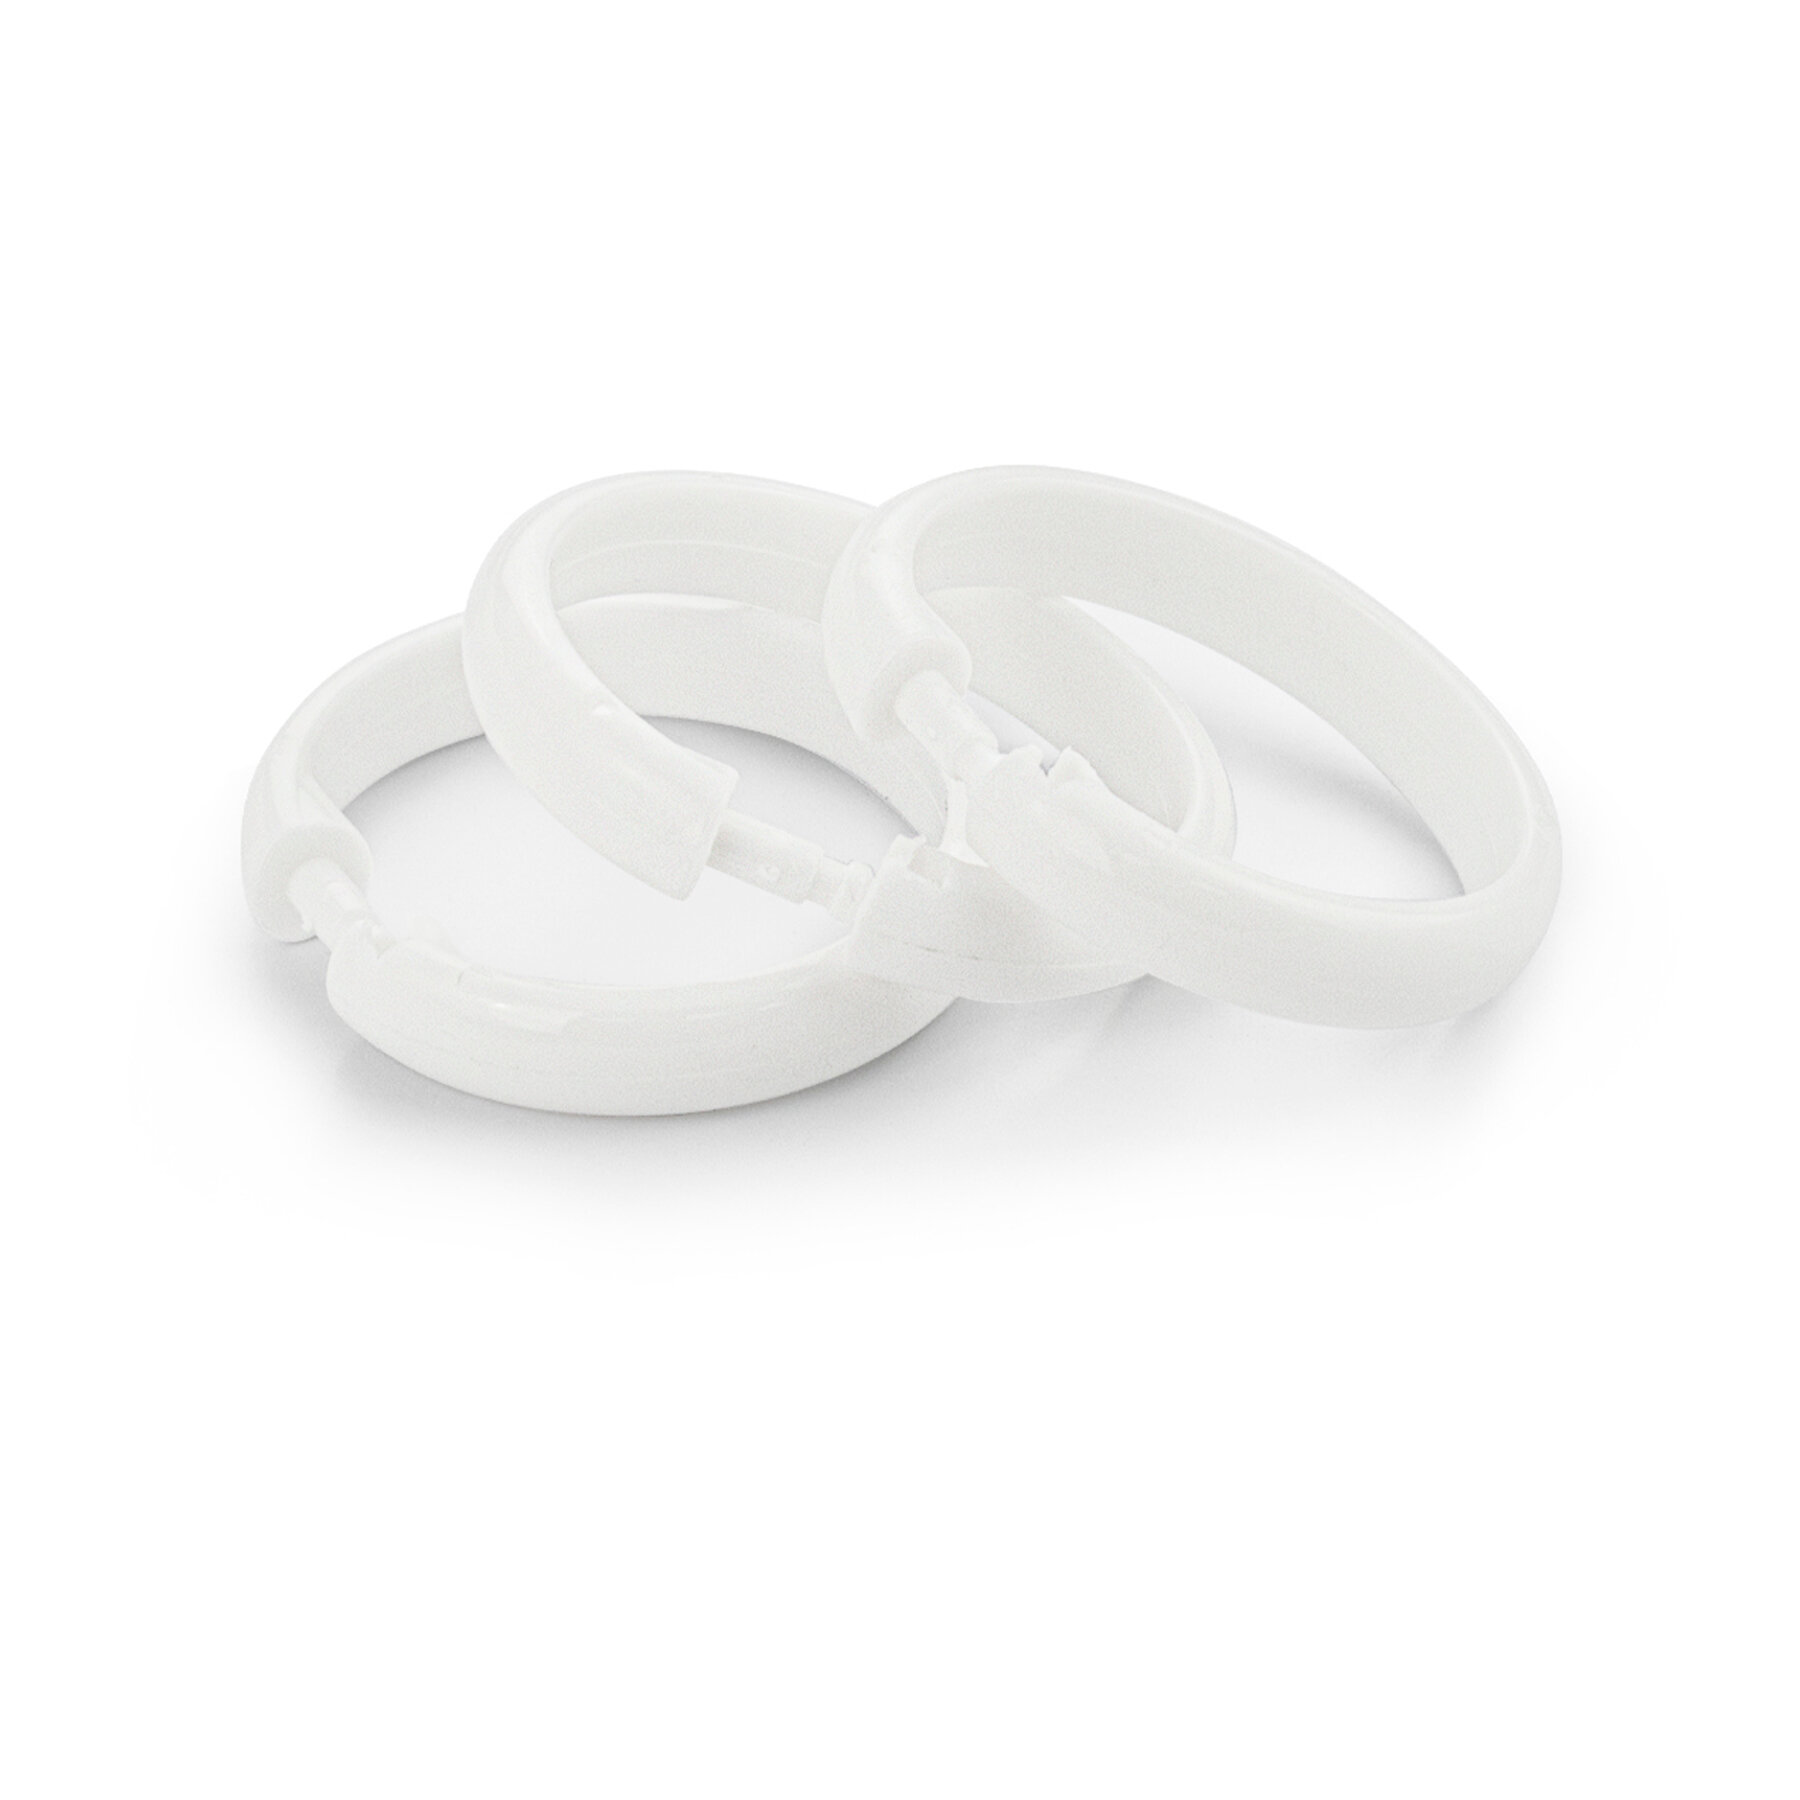 Кольца для штор и карнизов в ванную и душевую, белые, пластиковые, упаковка 12 штук . Модель люкс, санакс 75006